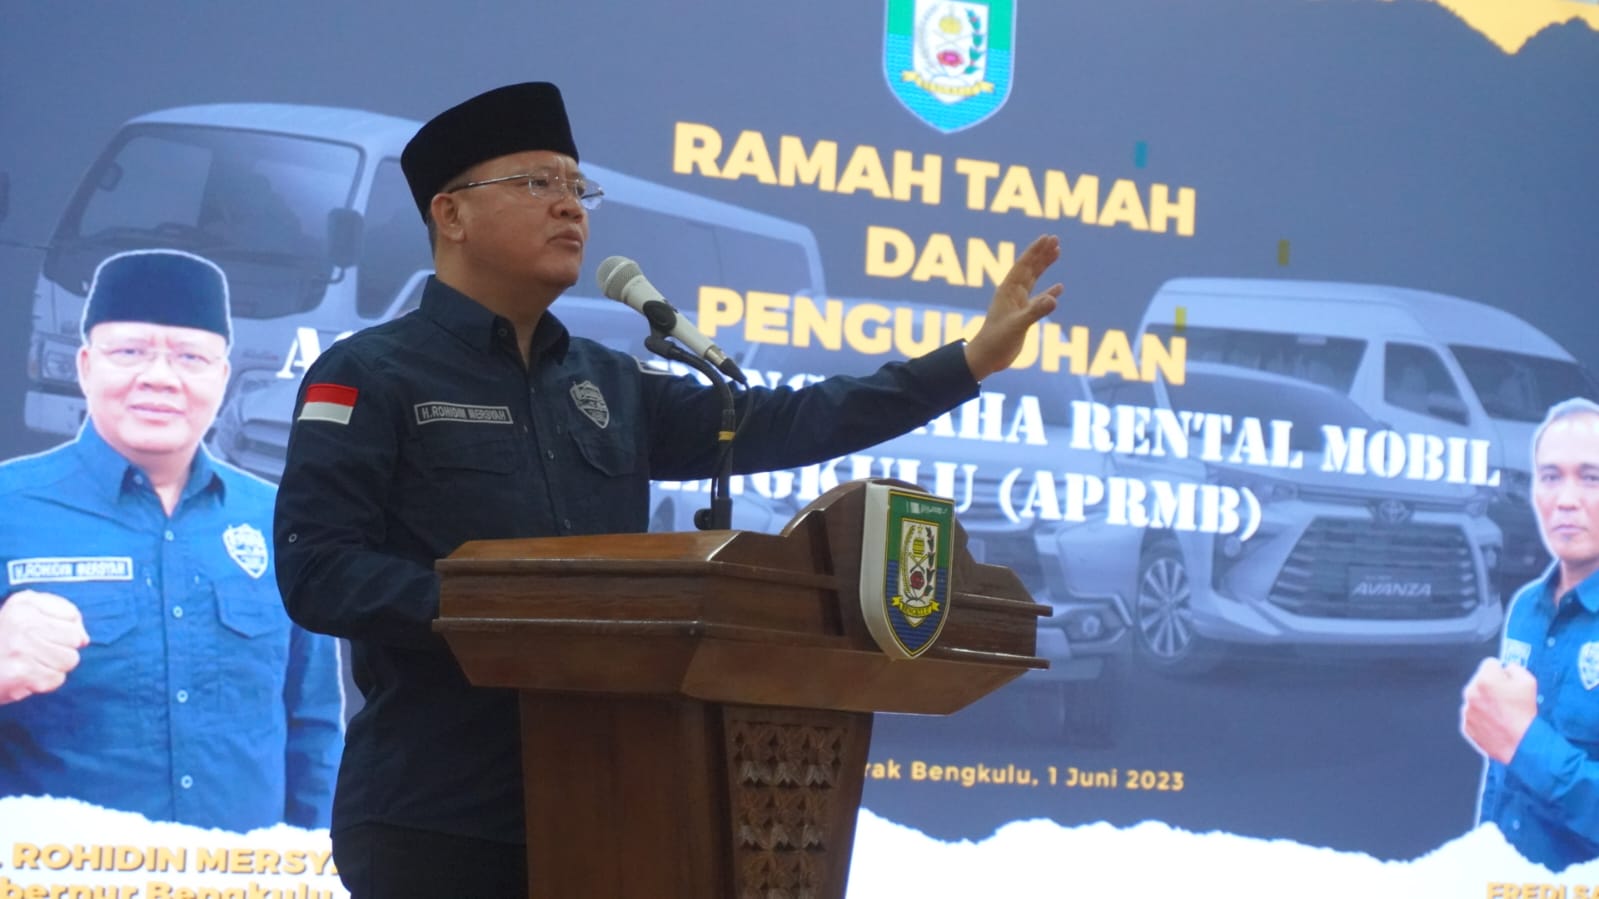 Berendo Informasi Bengkulu, Gubernur Rohidin Dorong Pelatihan Sikap dan Wawasan Para Sopir